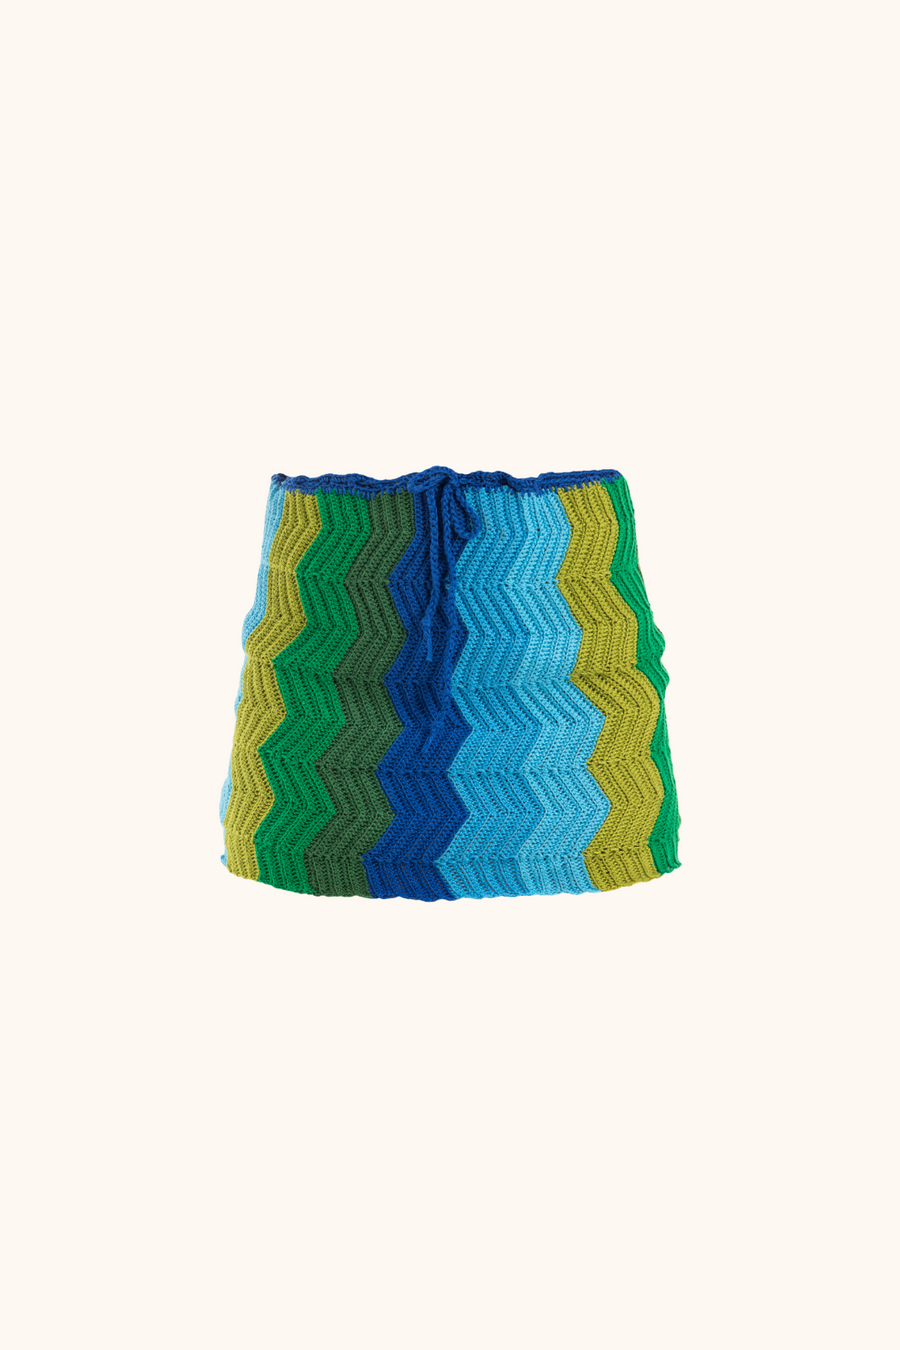 'Blue Ocean' Crochet Skirt